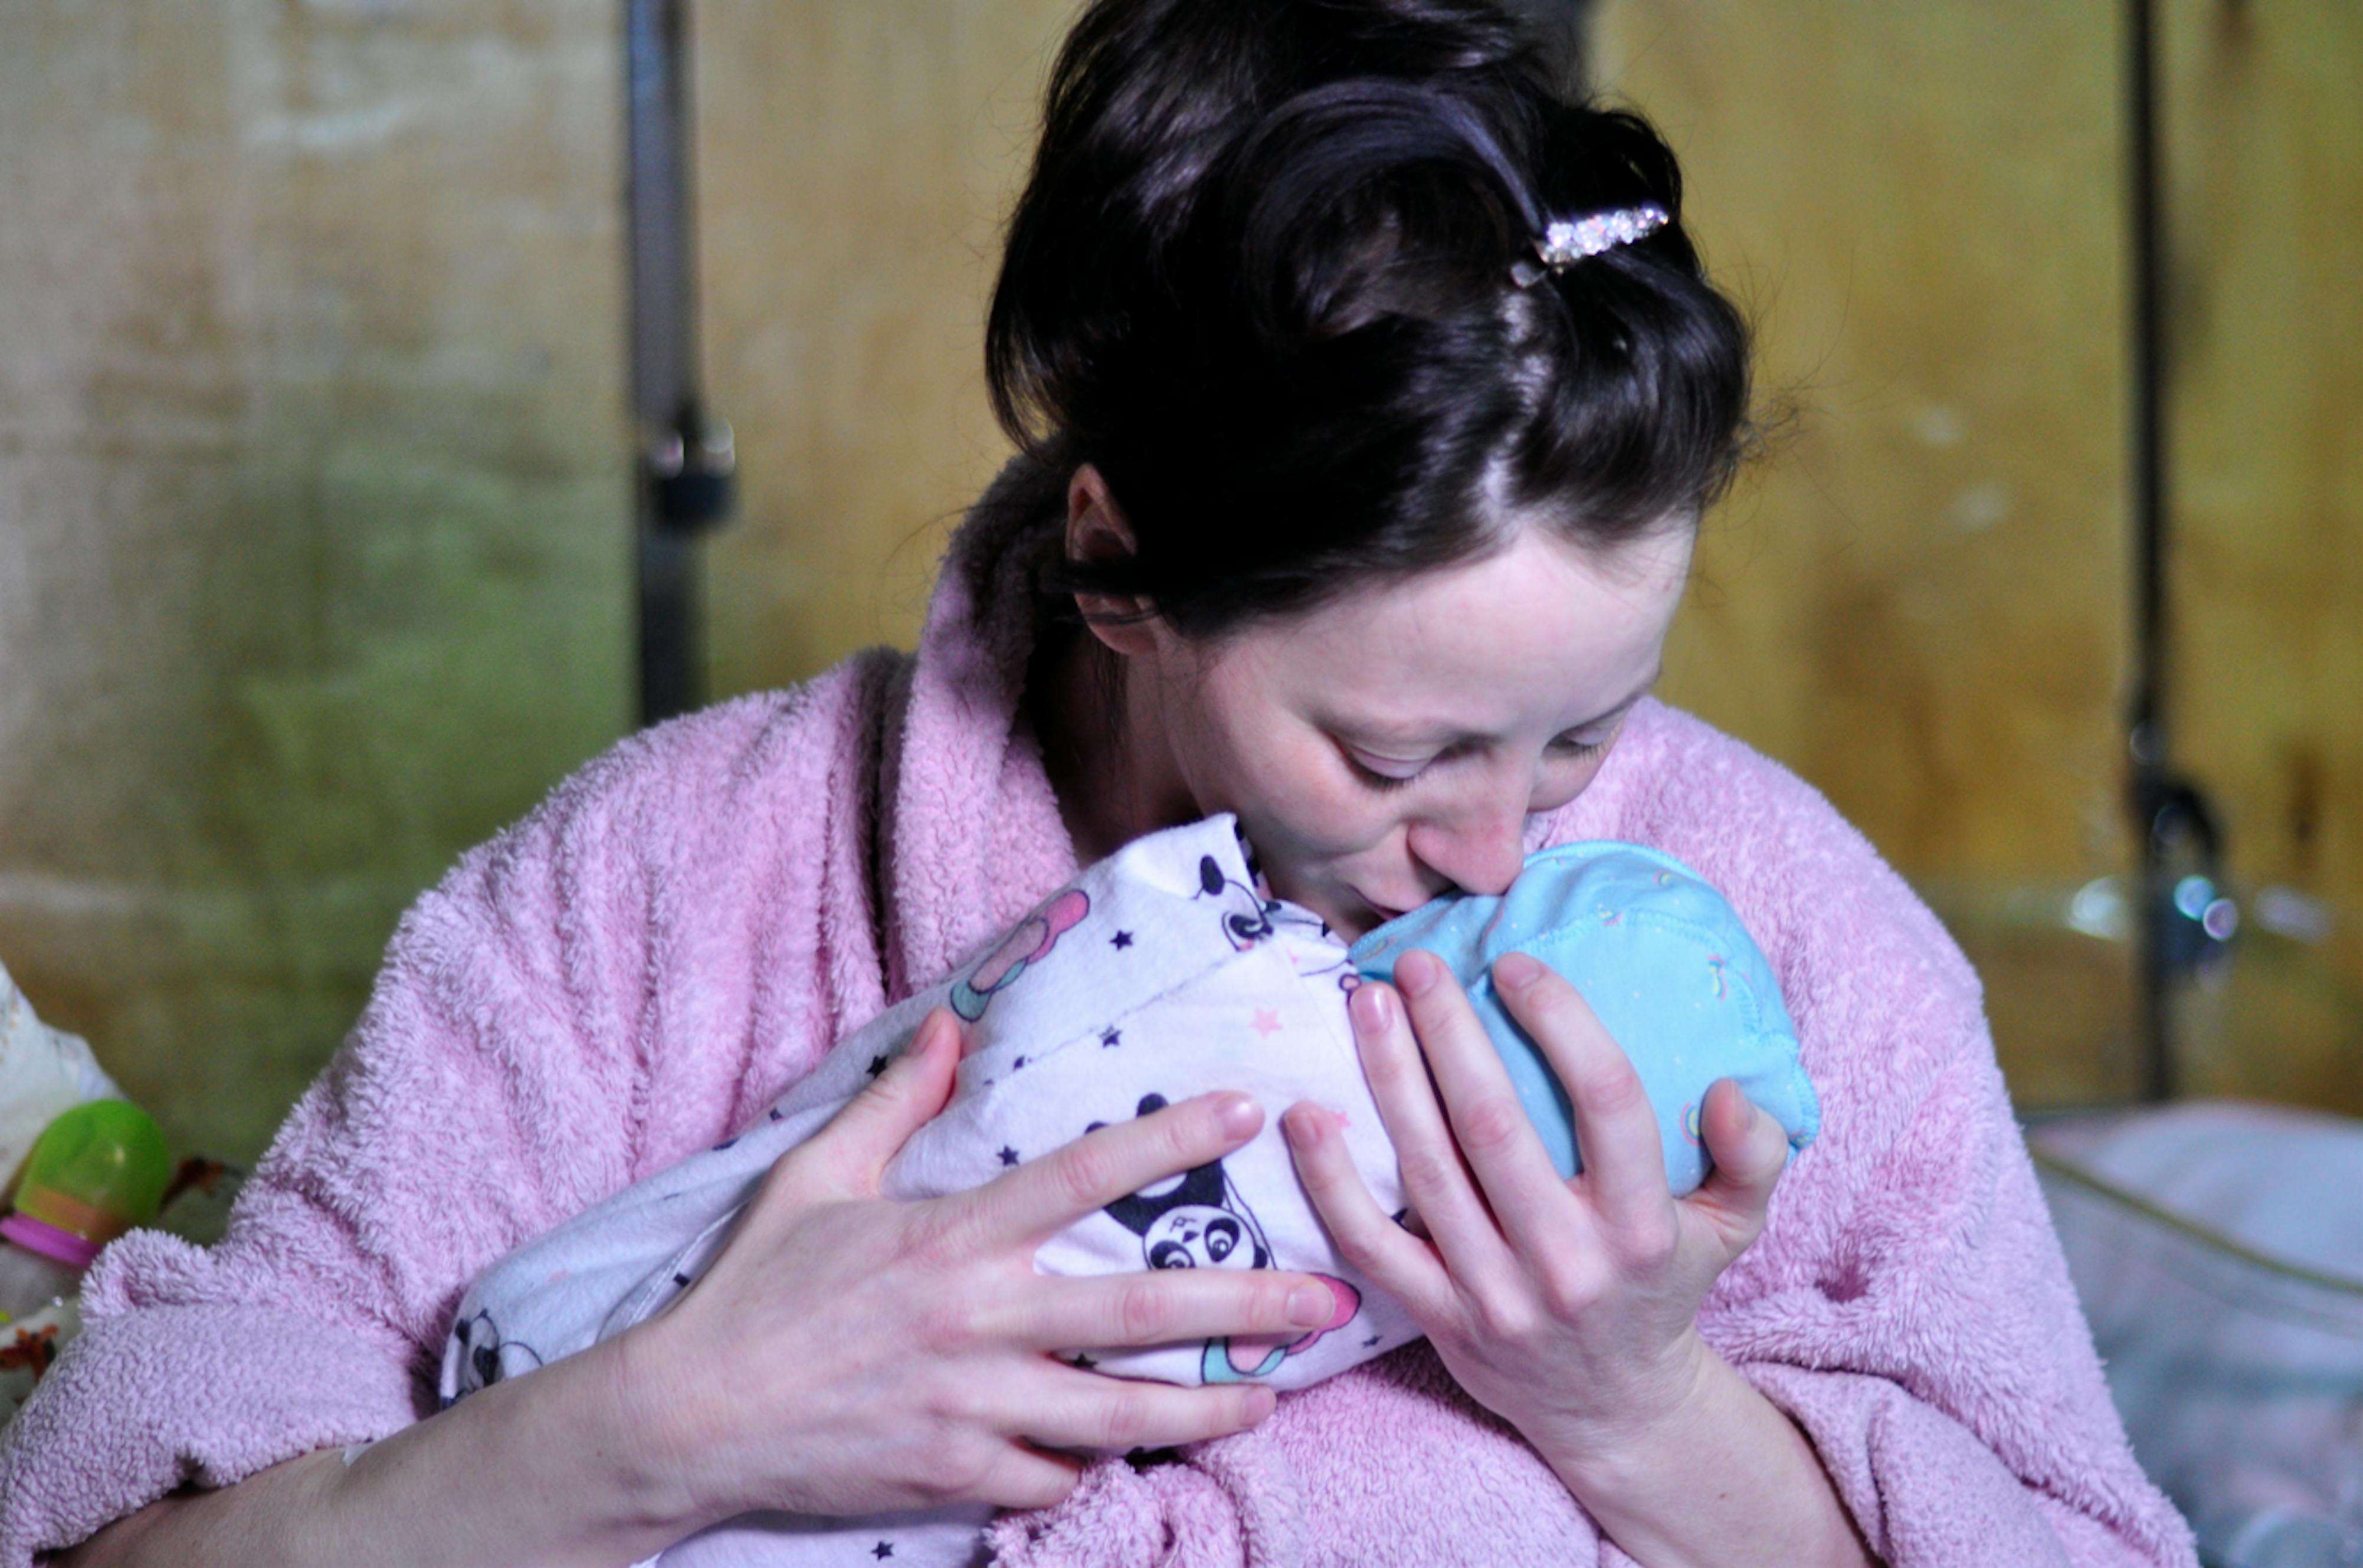 Ucraina: una mamma bacia il suo piccolo appena nato. Il conflitto scoppiato nel febbraio 2022 ha messo a rischio milioni di civili, tra cui mamme incinte e bambini appena nati.